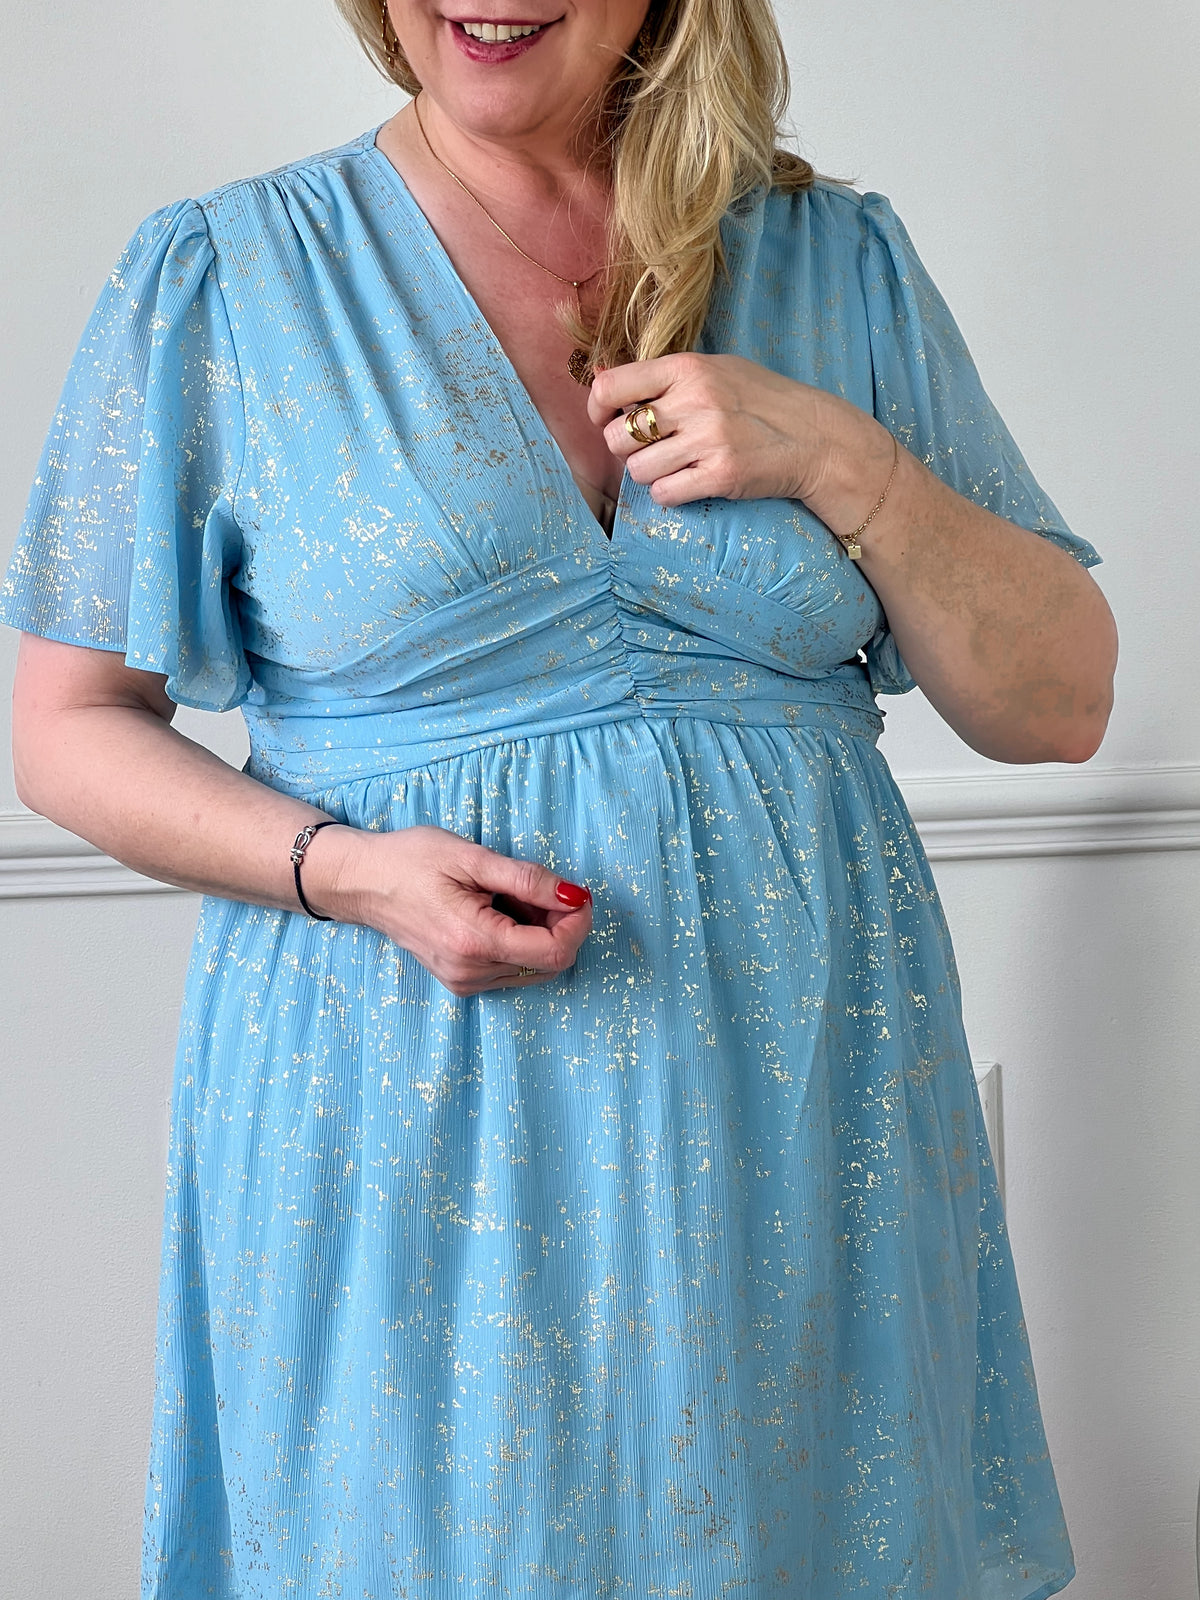 Incroyablement élégante et confortable, la robe courte bleue Kayla ajoutera une touche de sophistication à votre garde-robe. Avec son col en V flatteur et ses détails dorés brillants, cette robe est parfaite pour les grandes tailles. Disponible en bleu clair et en rose.